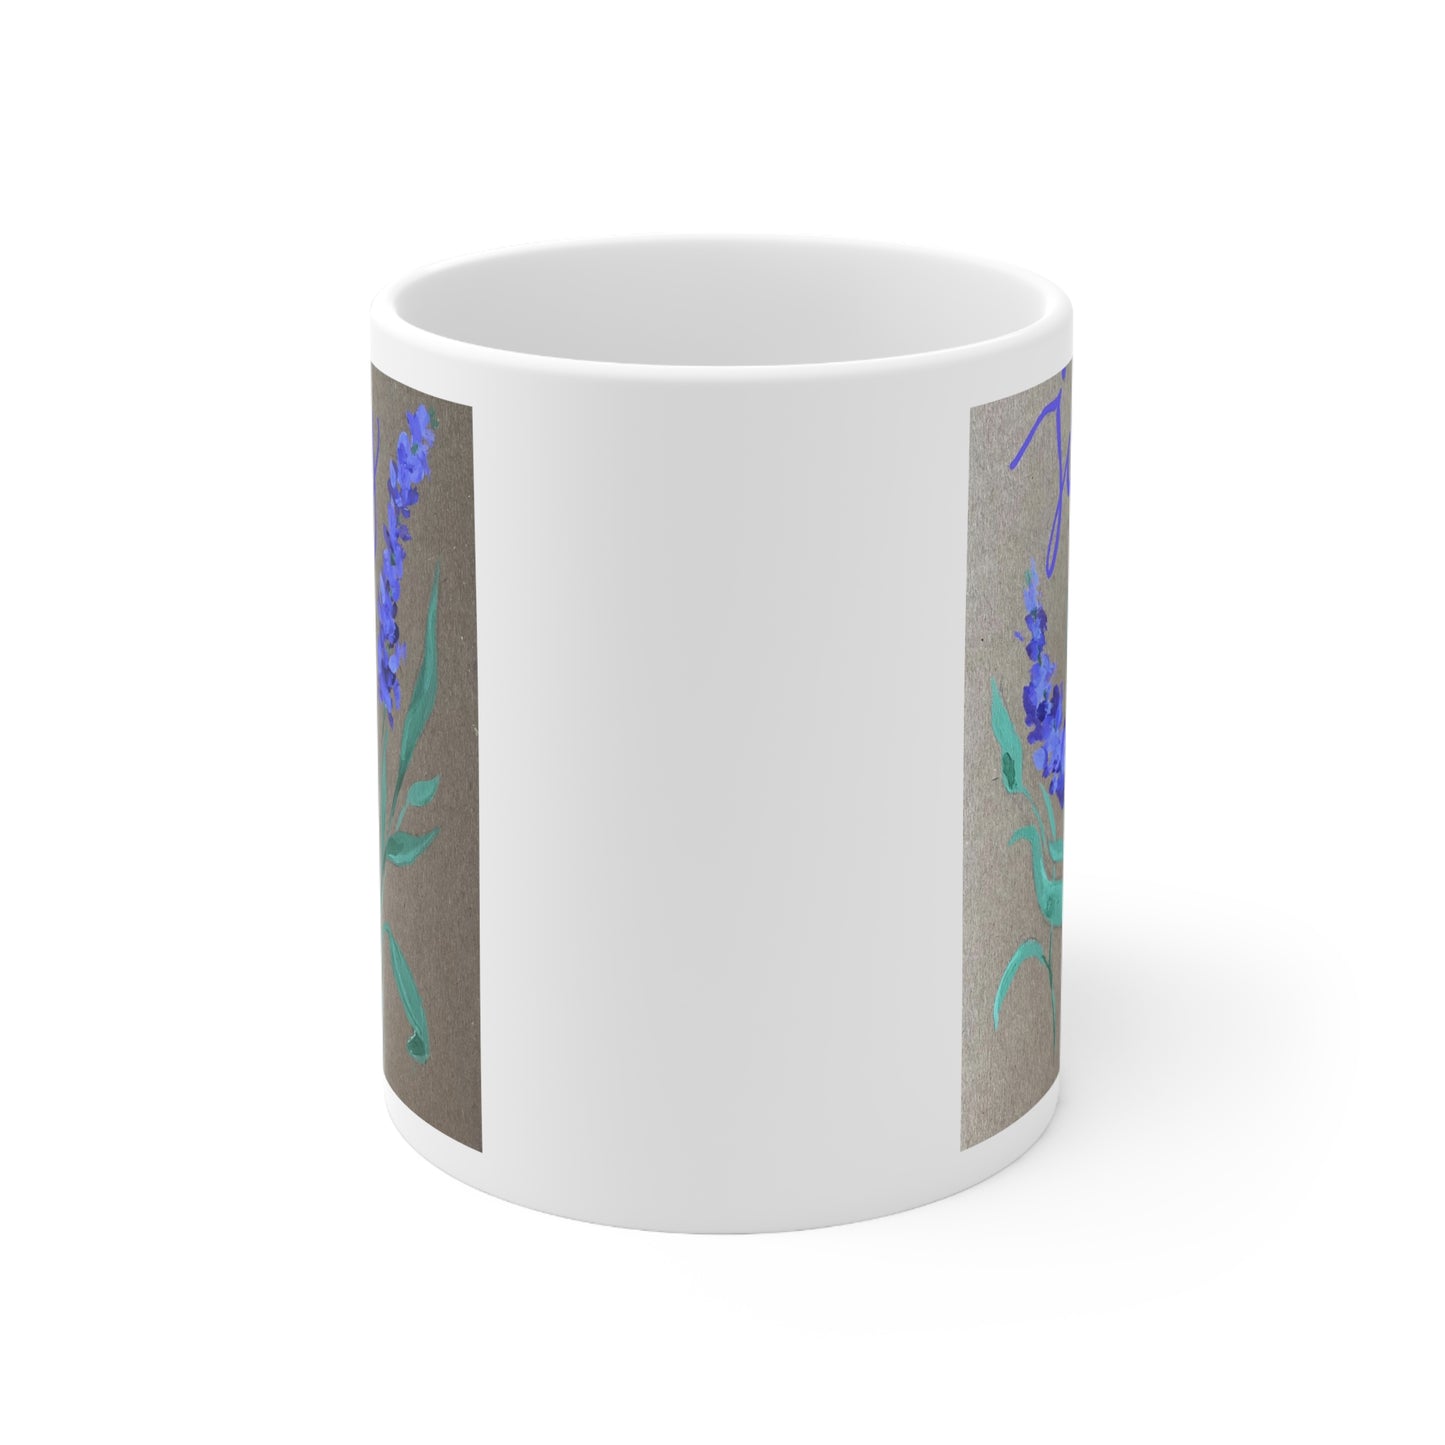 Joy - Ceramic Mug 11oz